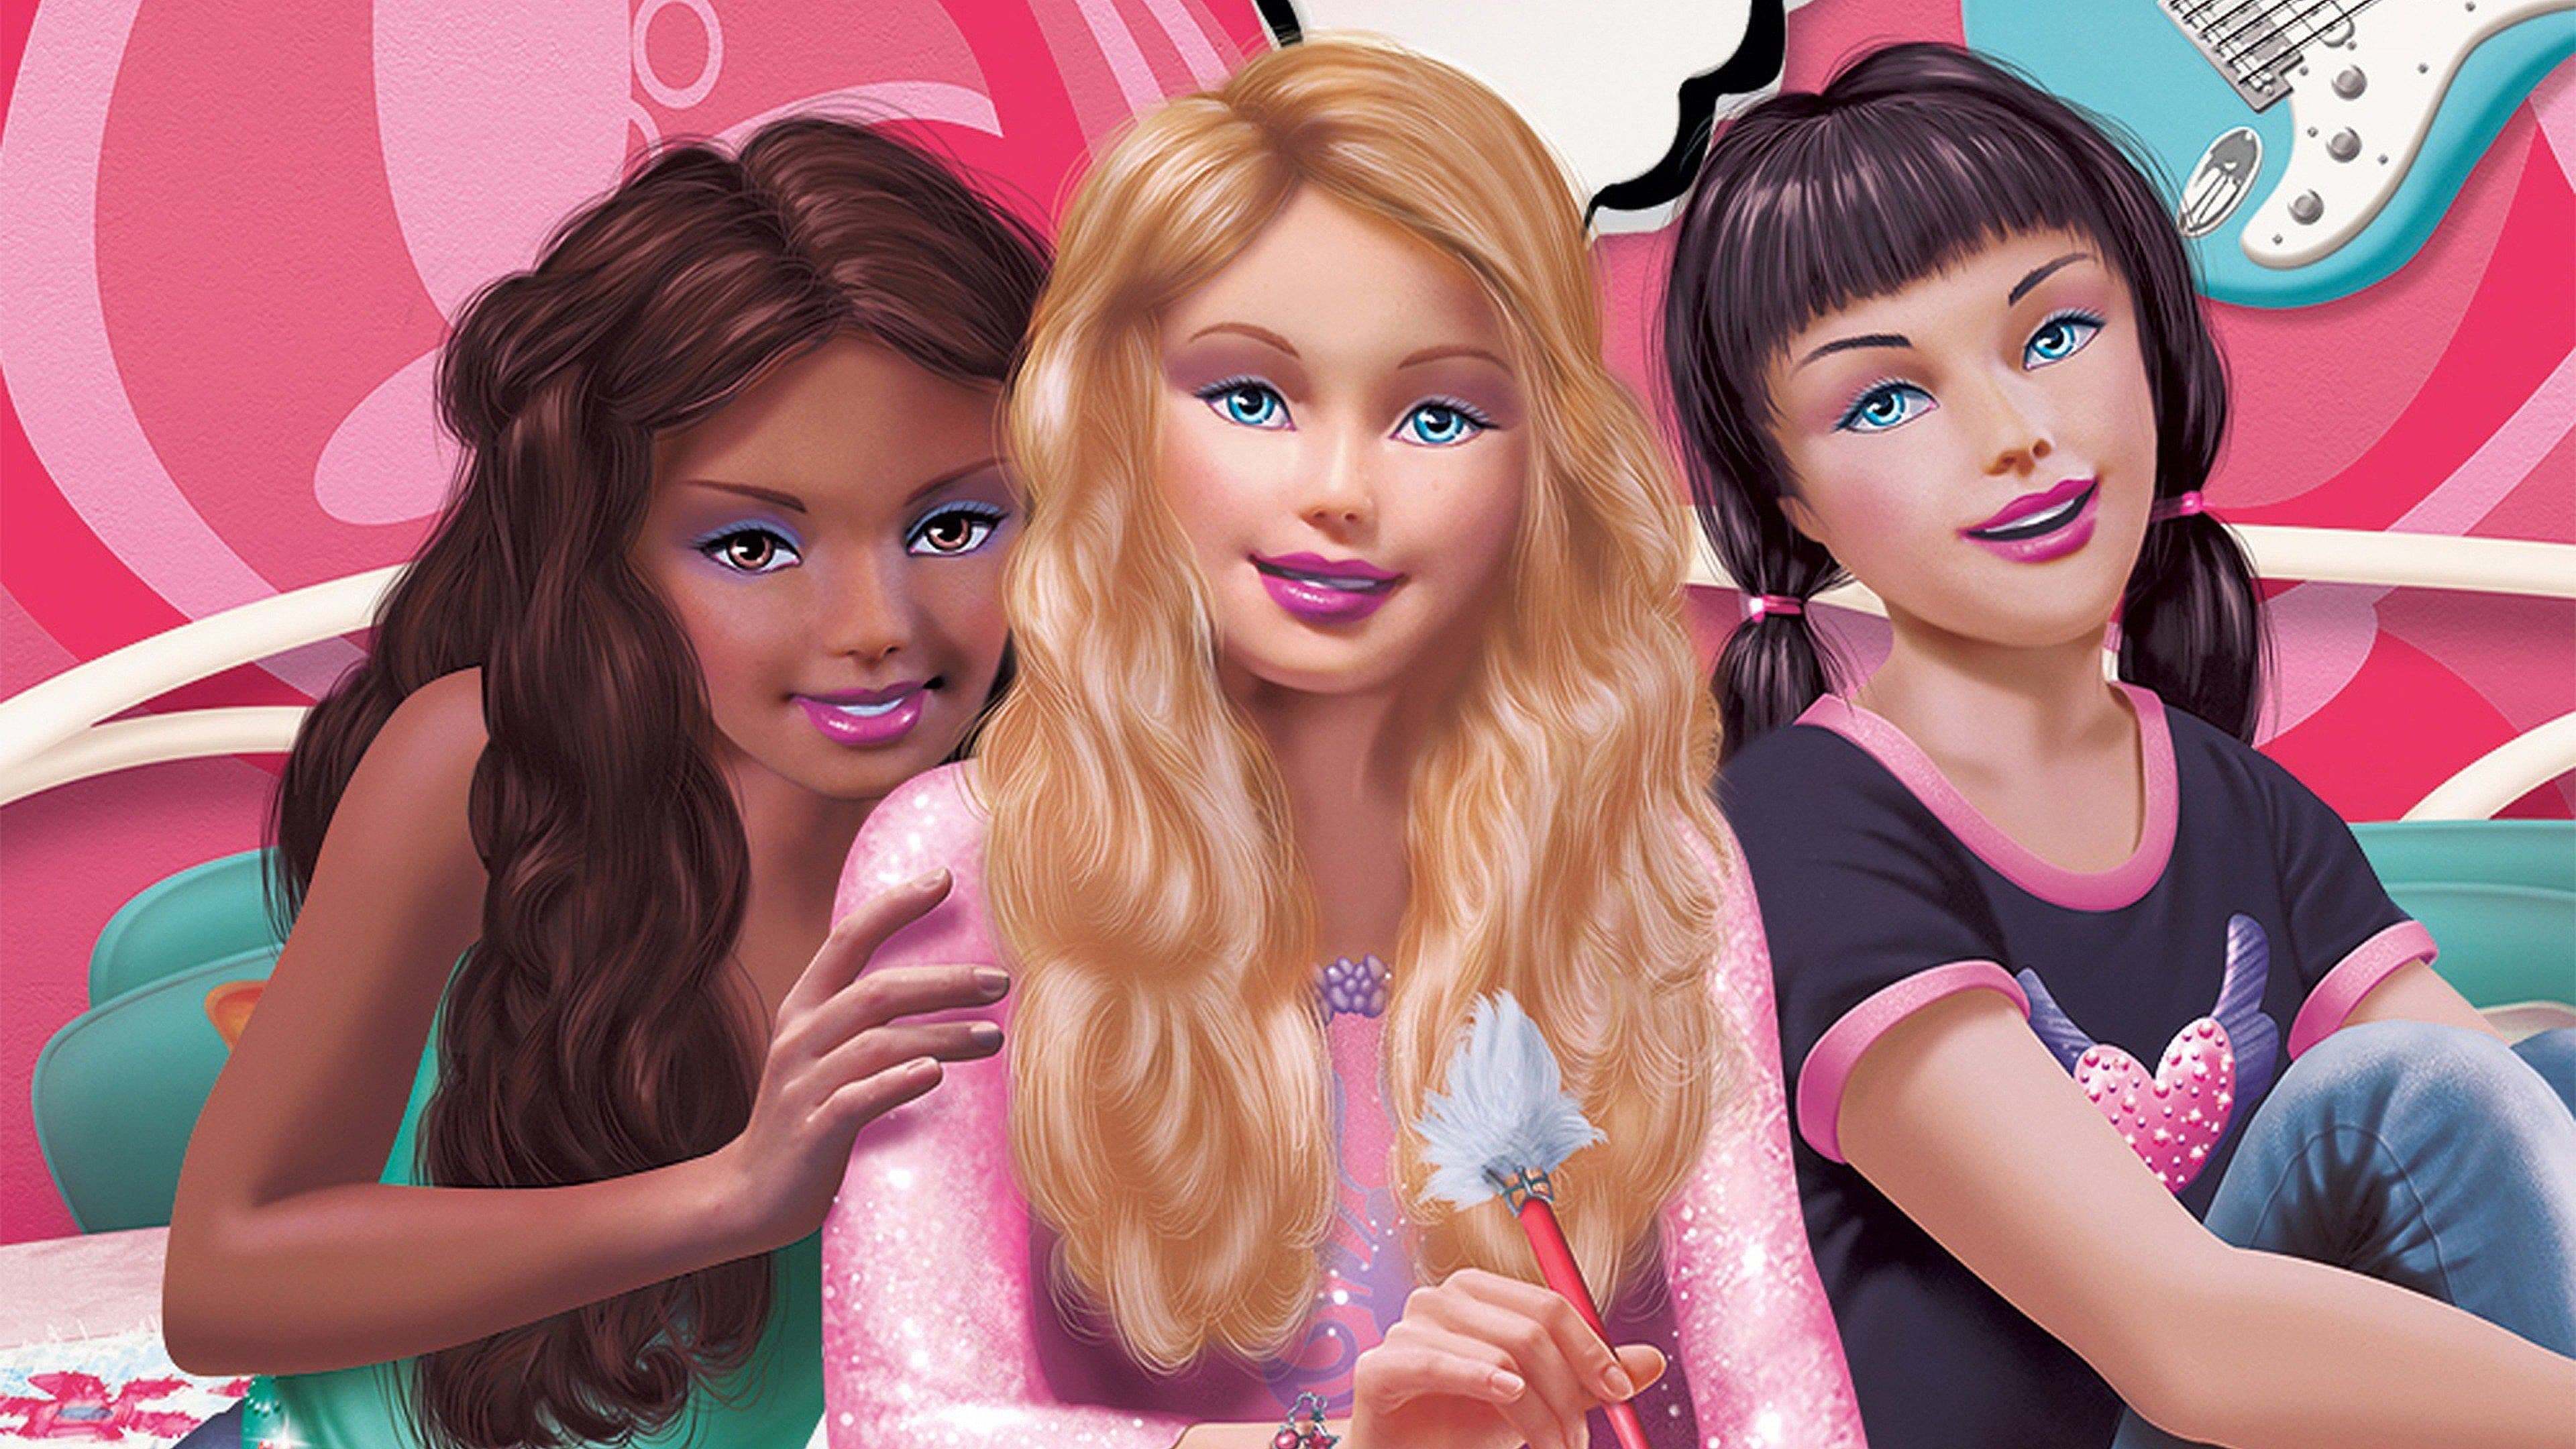 Il diario di Barbie (2006)